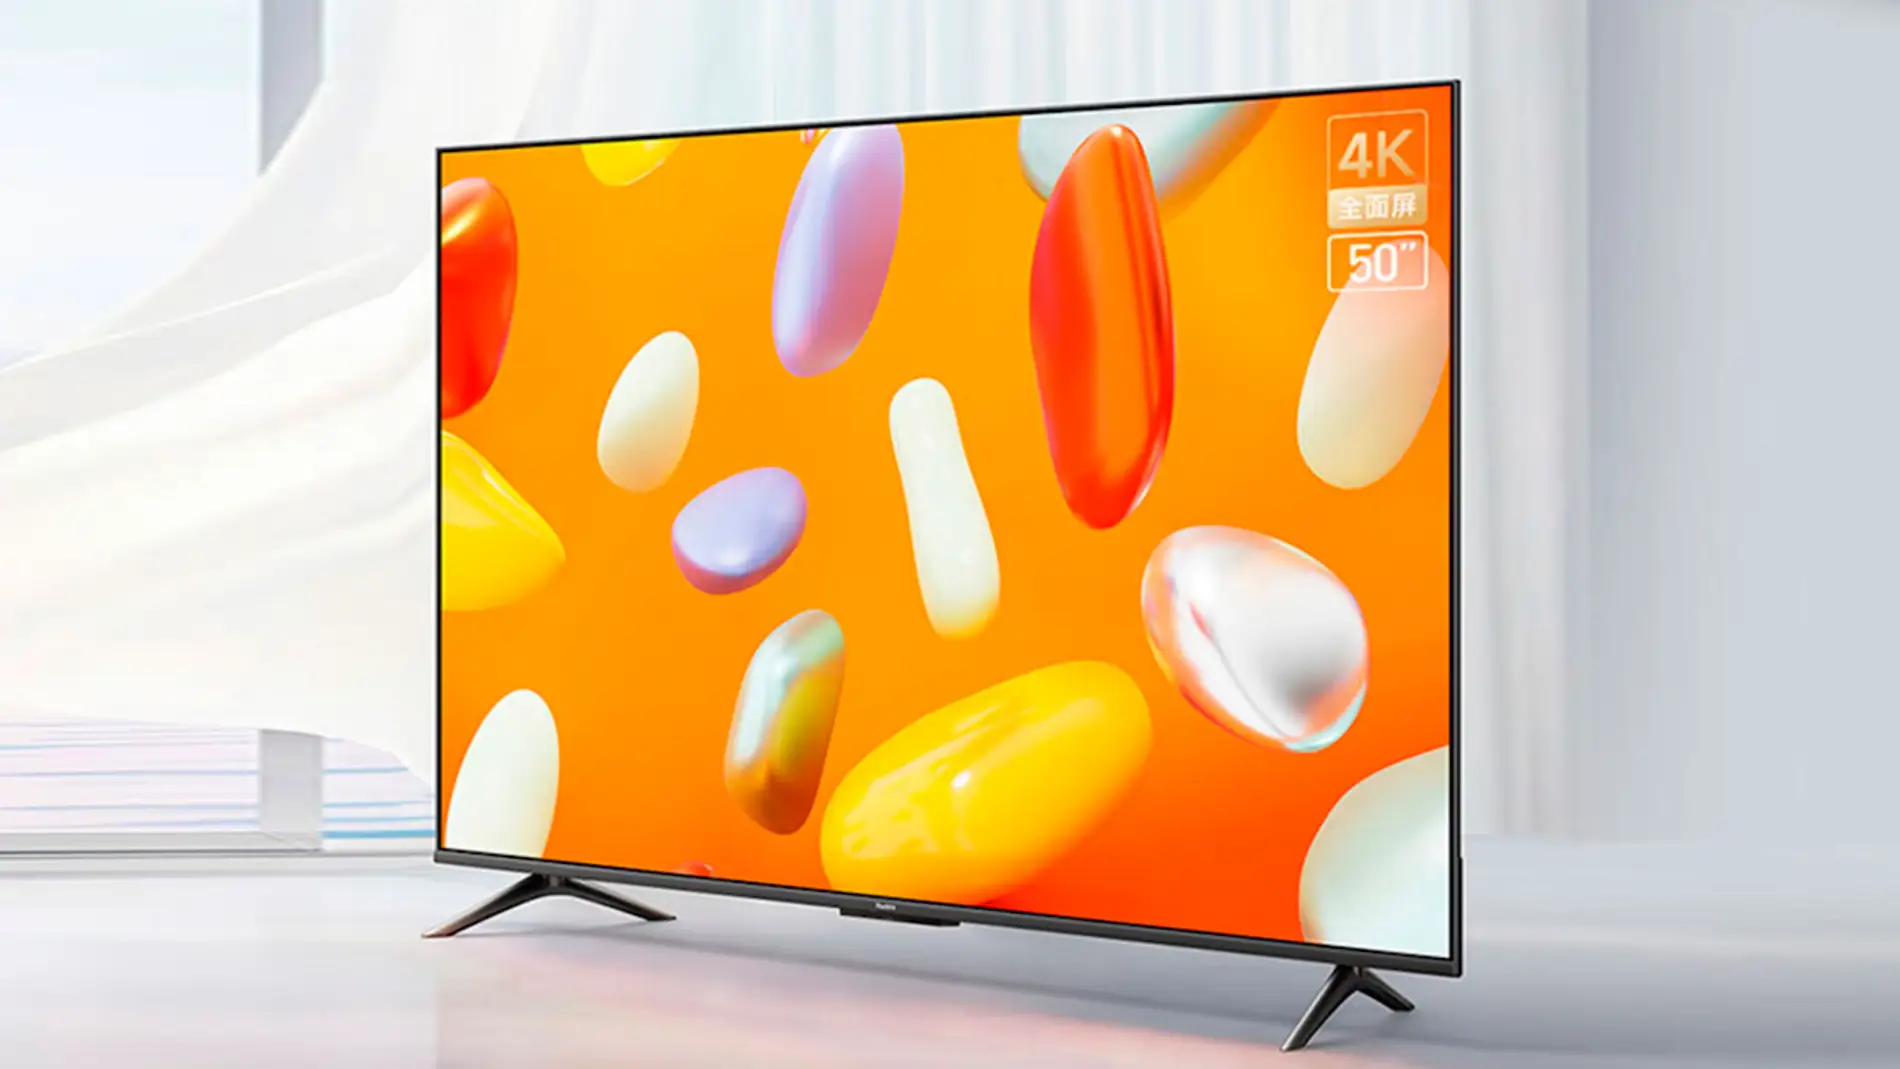 La nueva Smart TV de Xiaomi tiene 50 pulgadas y cuesta menos de